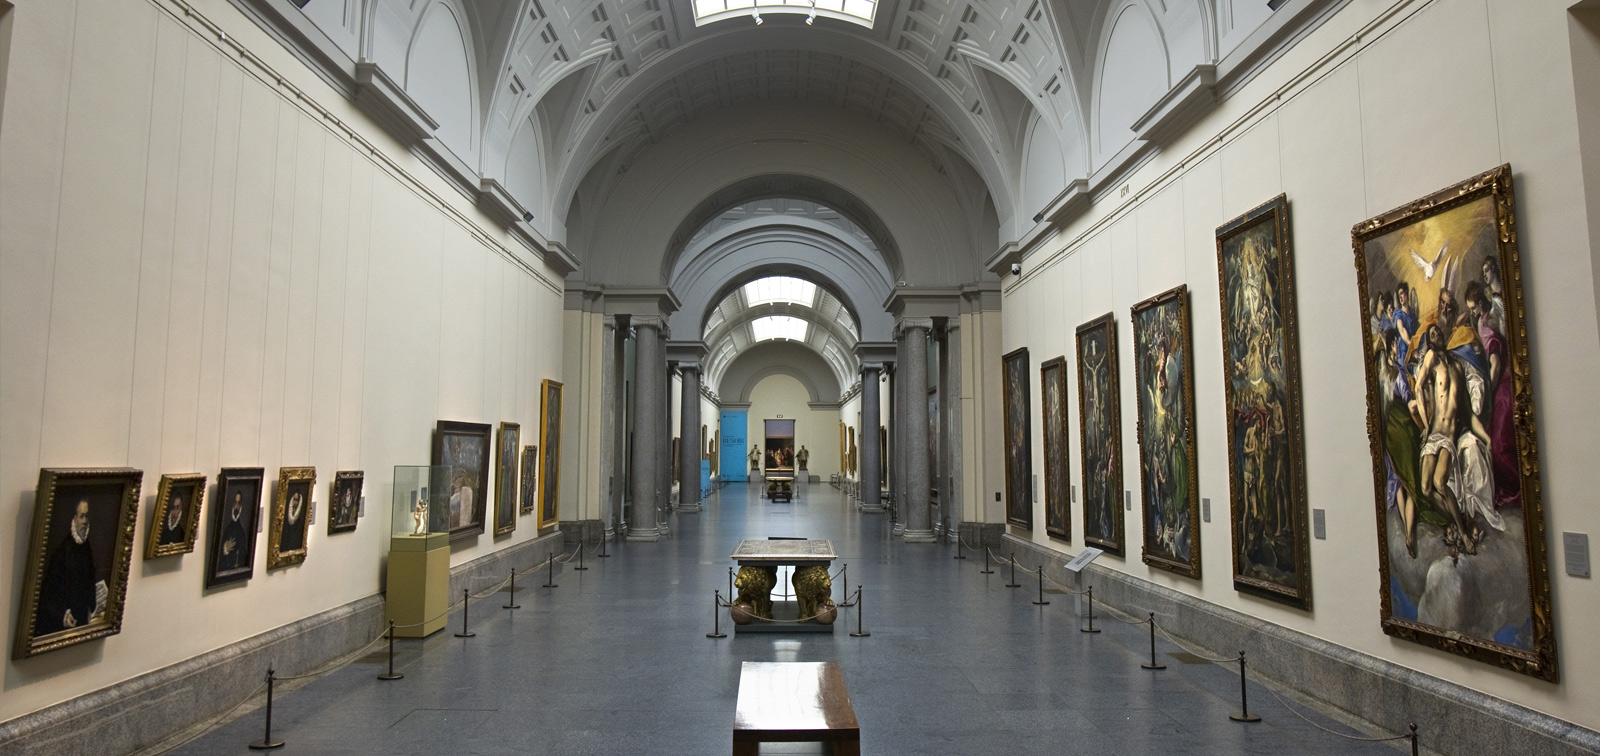 El Museo Nacional del Padro, en Madrid, tiene una importante colección para conocer de manera virtual. gentileza